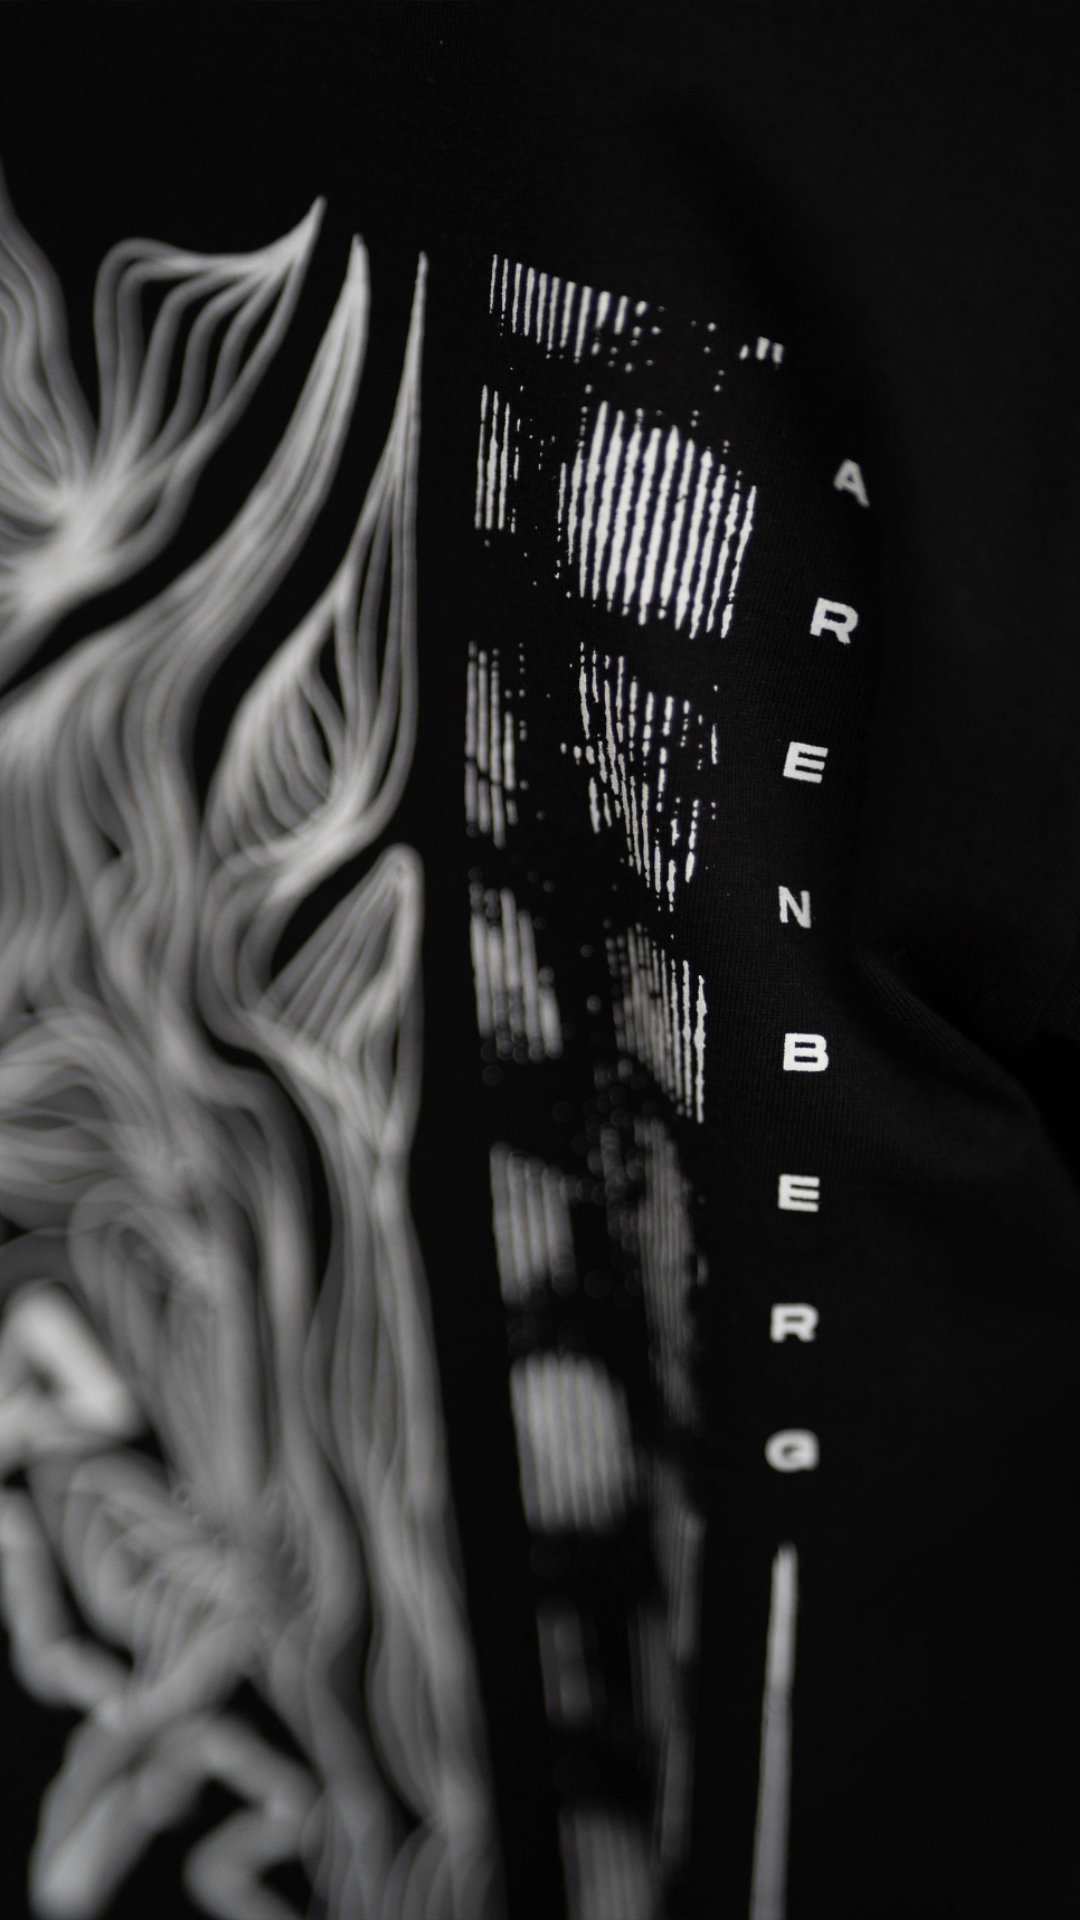 Arenbergdetail op t-shirt